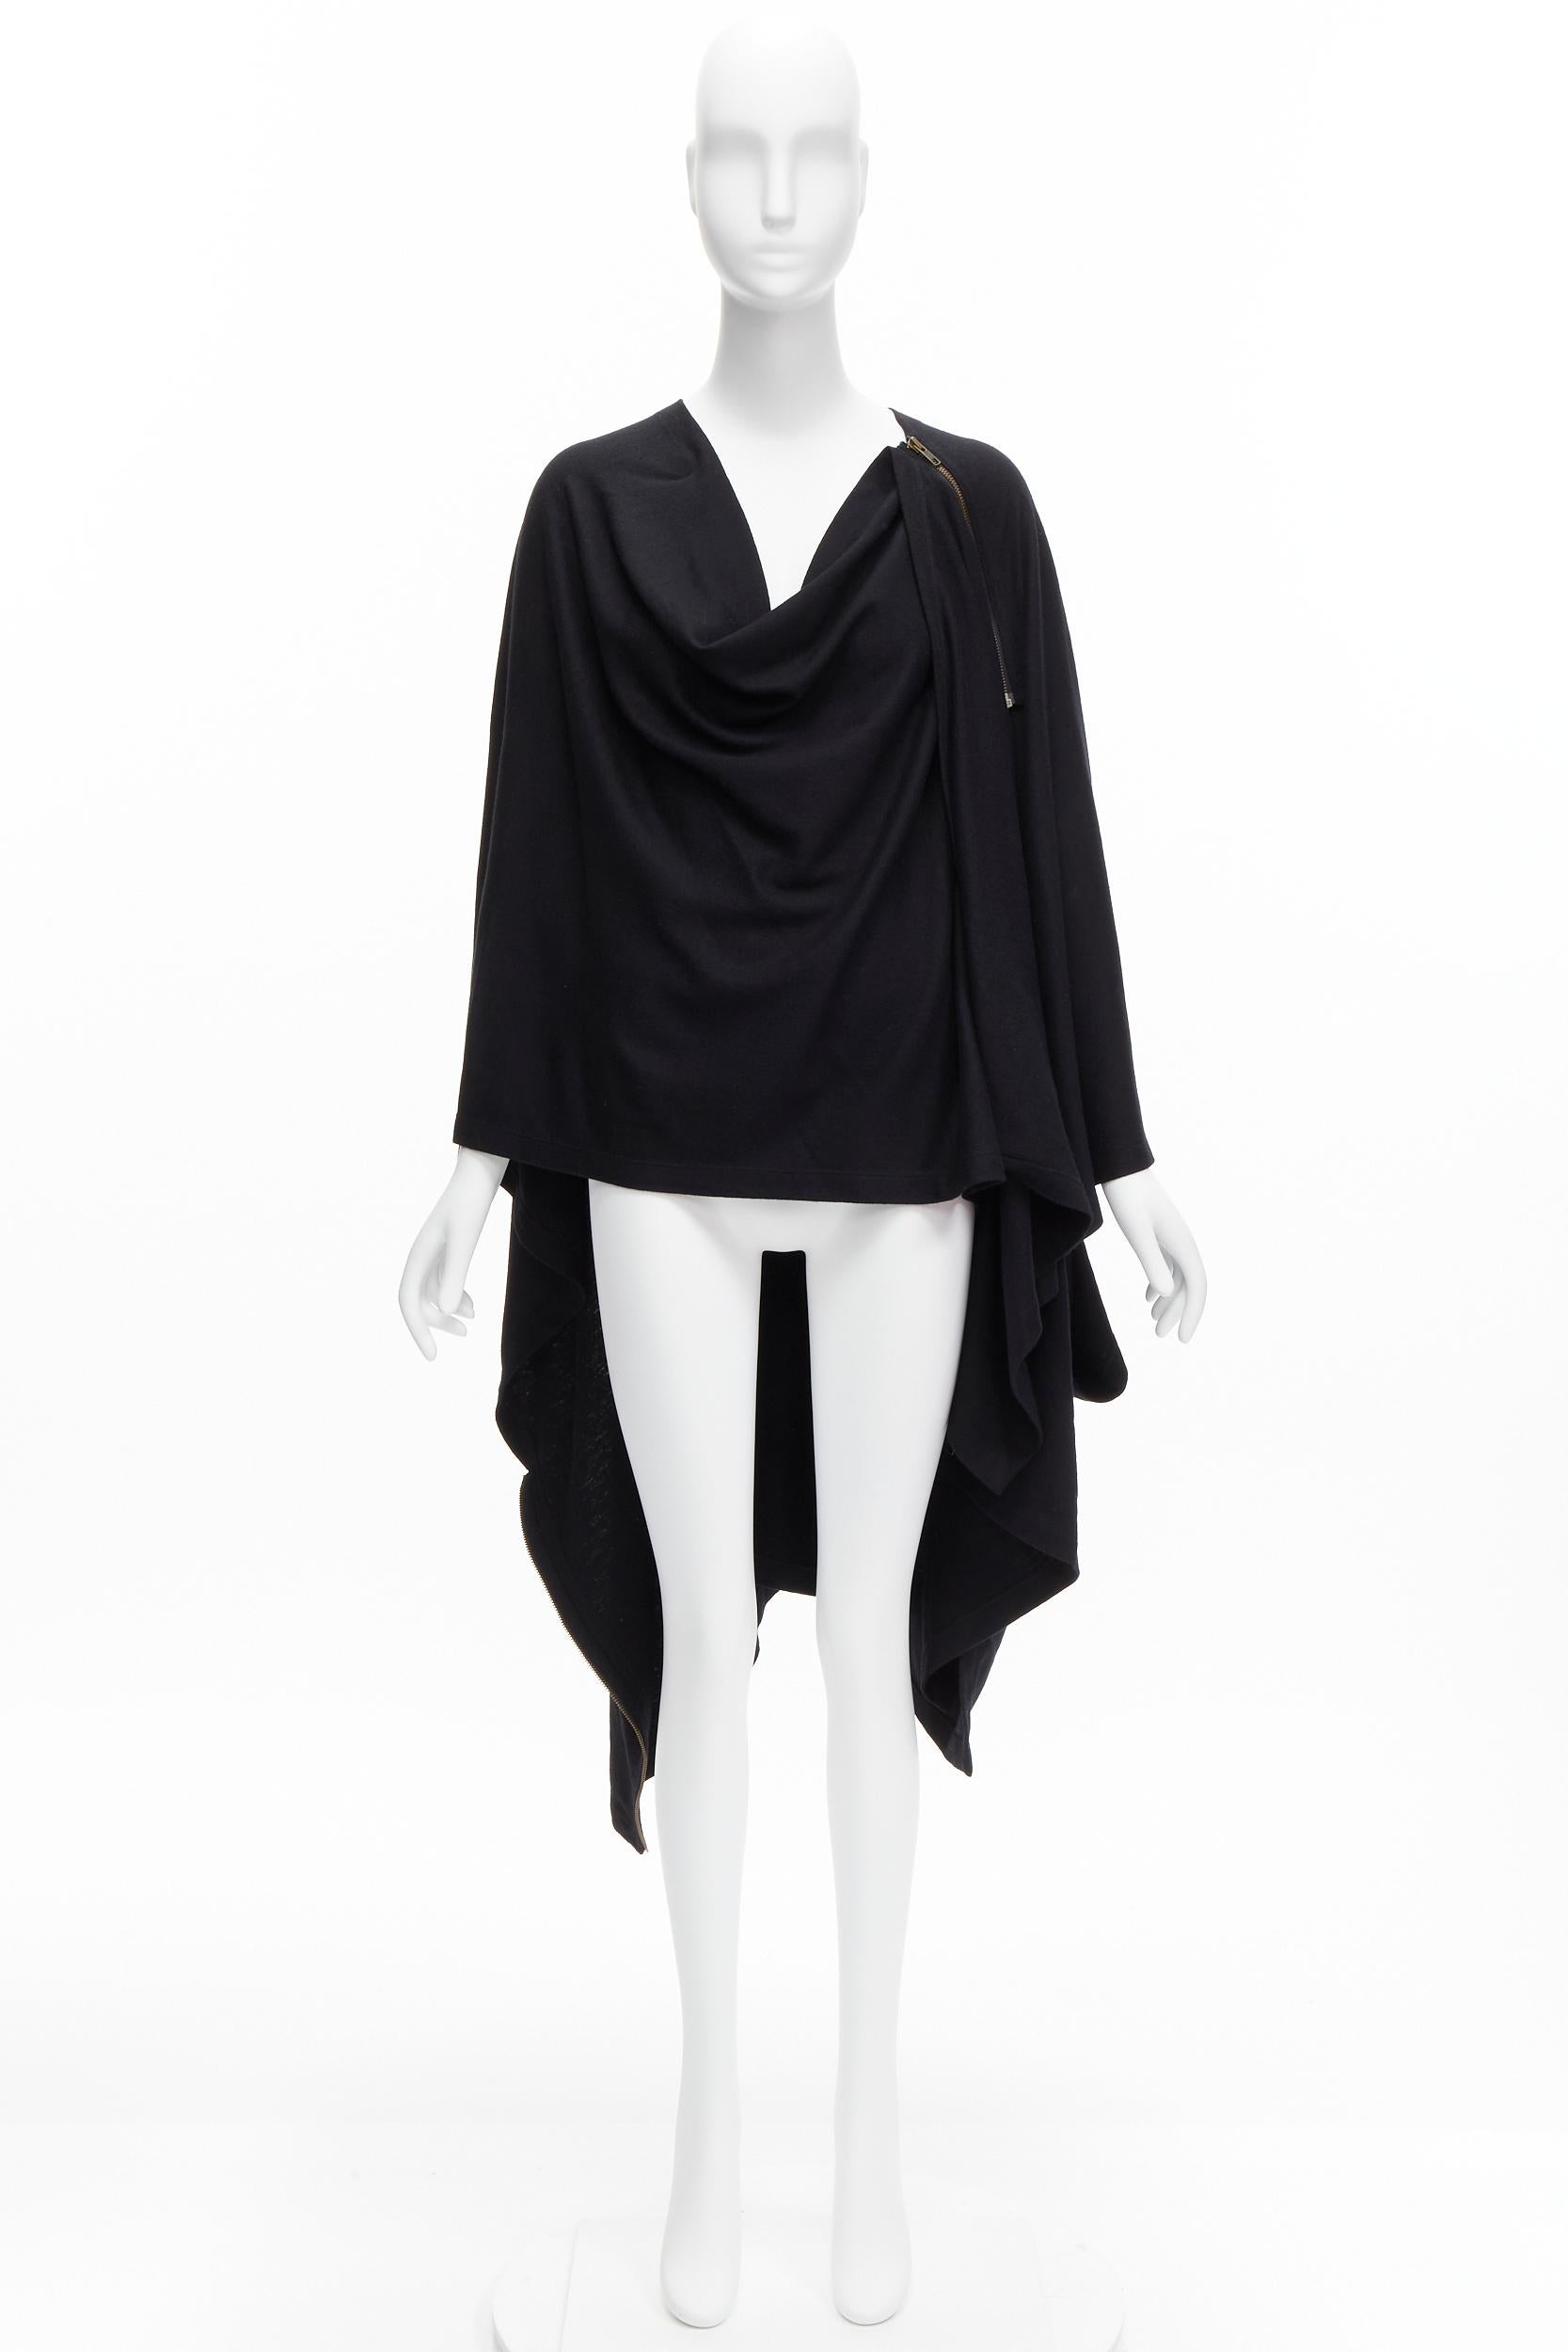 ISSEY MIYAKE 1980s Vintage black wool side zip draped cowl neck coat JP9 For Sale 6